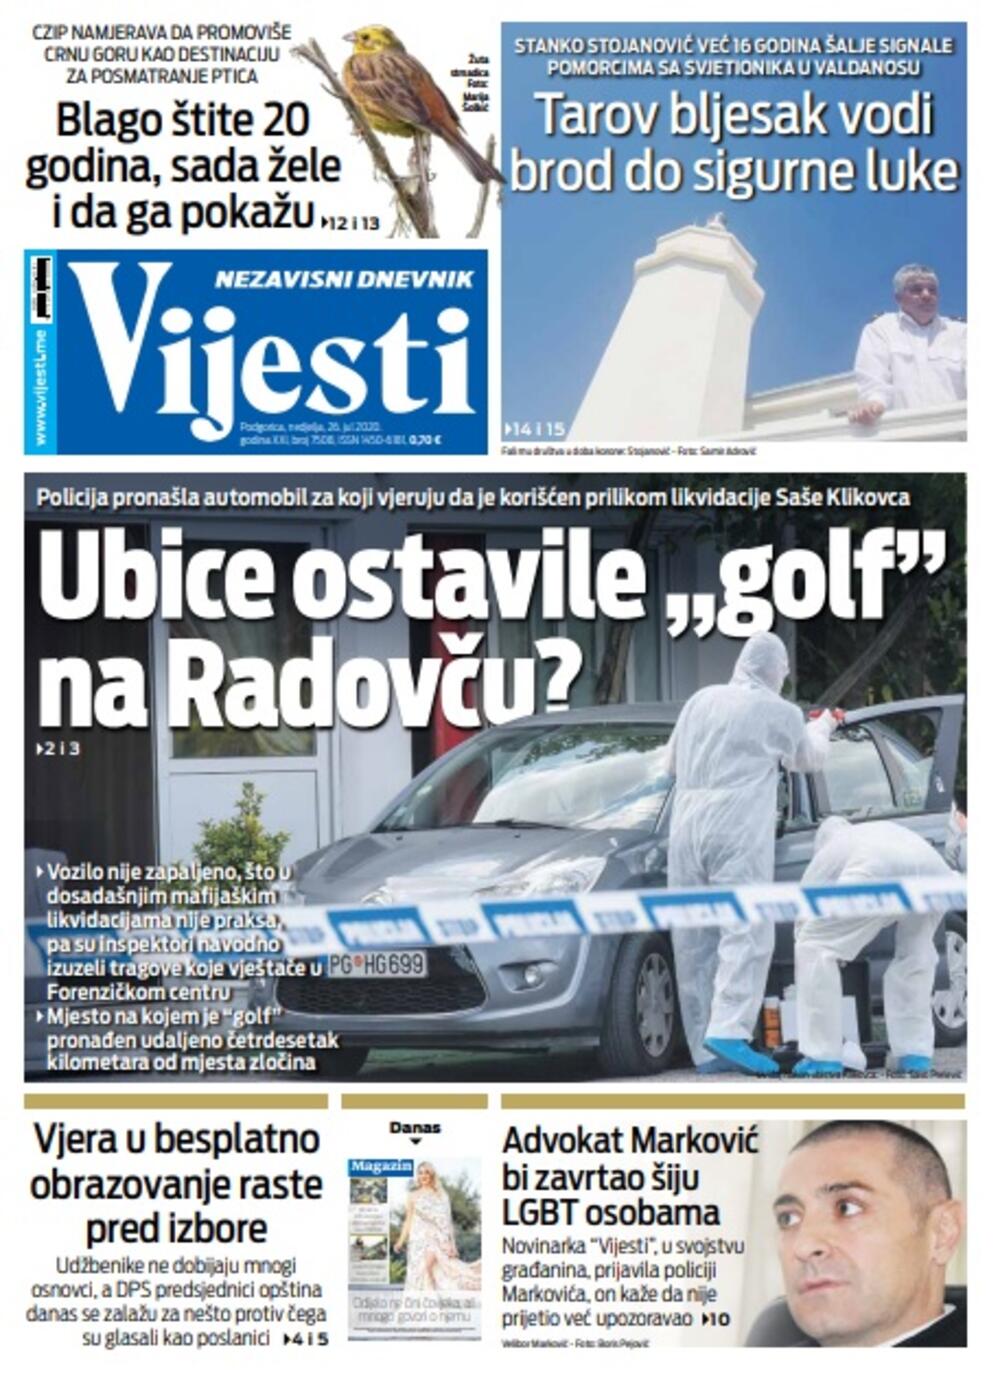 Naslovna strana "Vijesti" za 26. jul, Foto: Vijesti